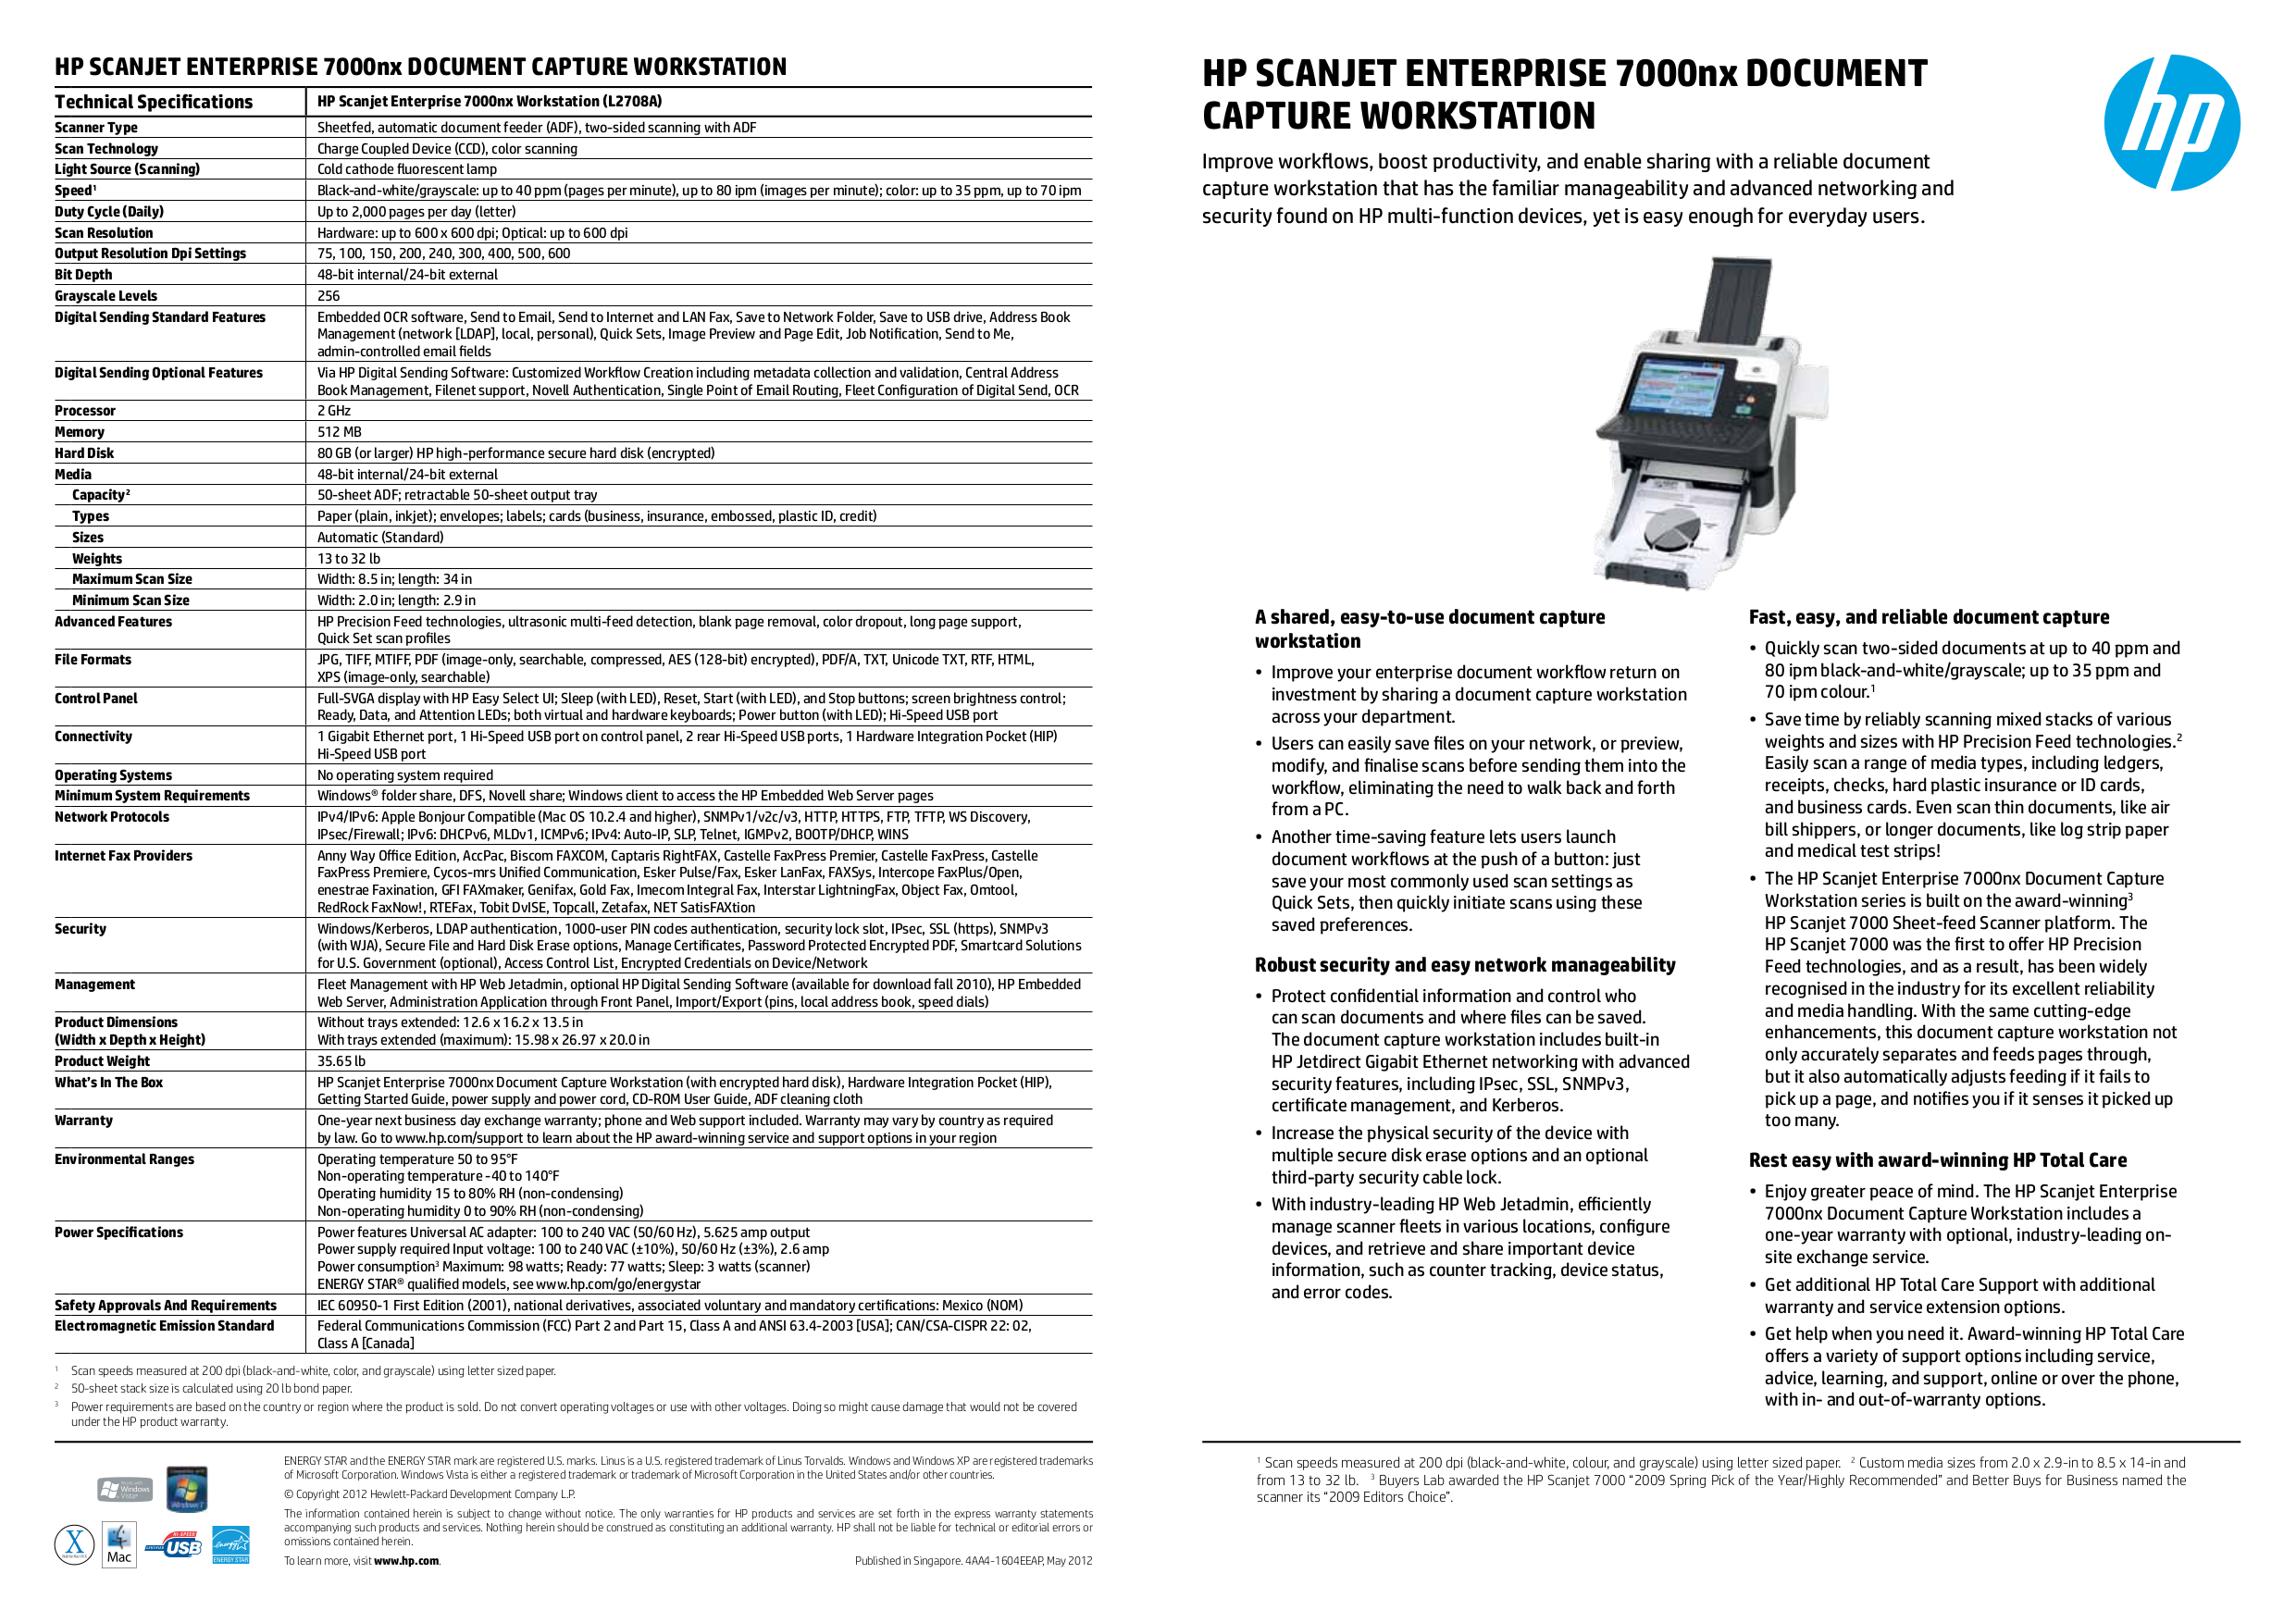 hp scanjet 2200c service manual